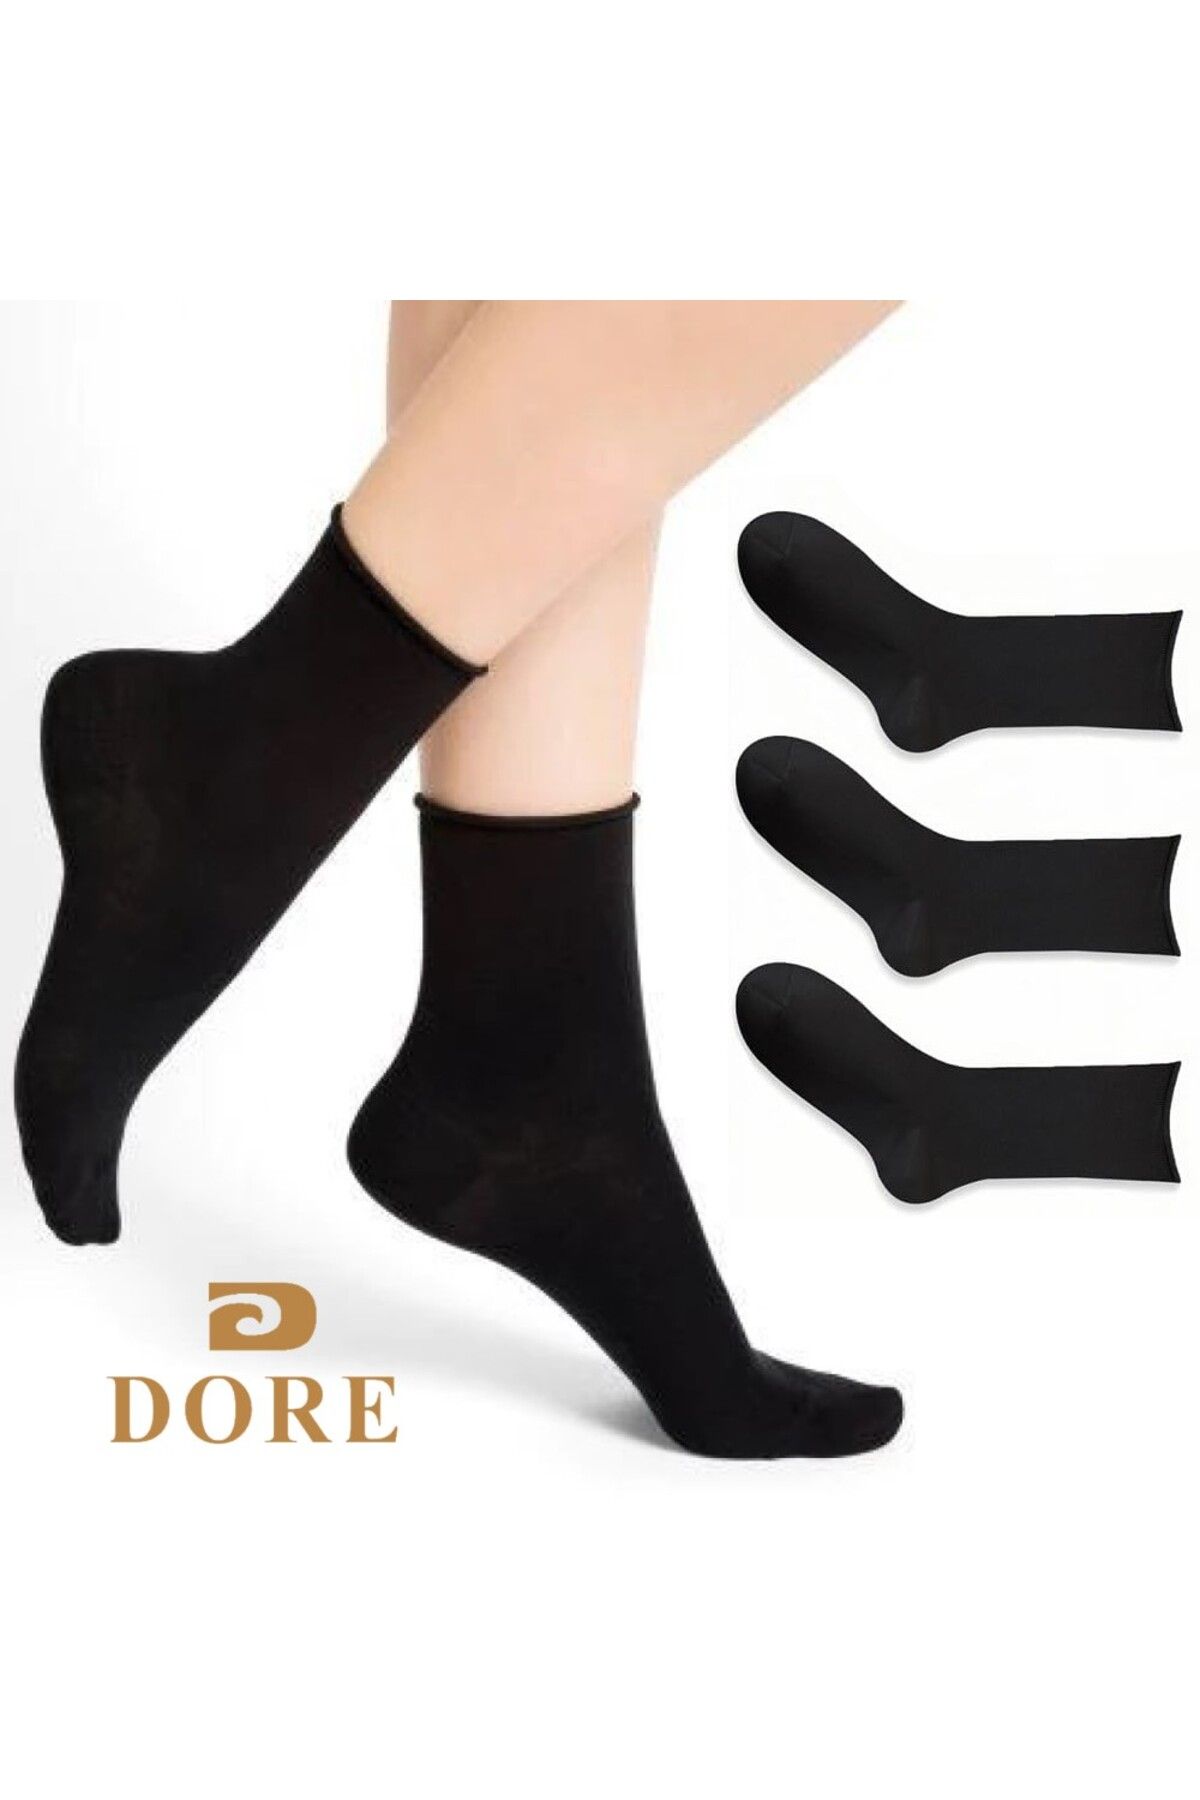 Dore Çorap 3'lü Paket Siyah Bambu Lastiksiz Dikişsiz Soket Çorap